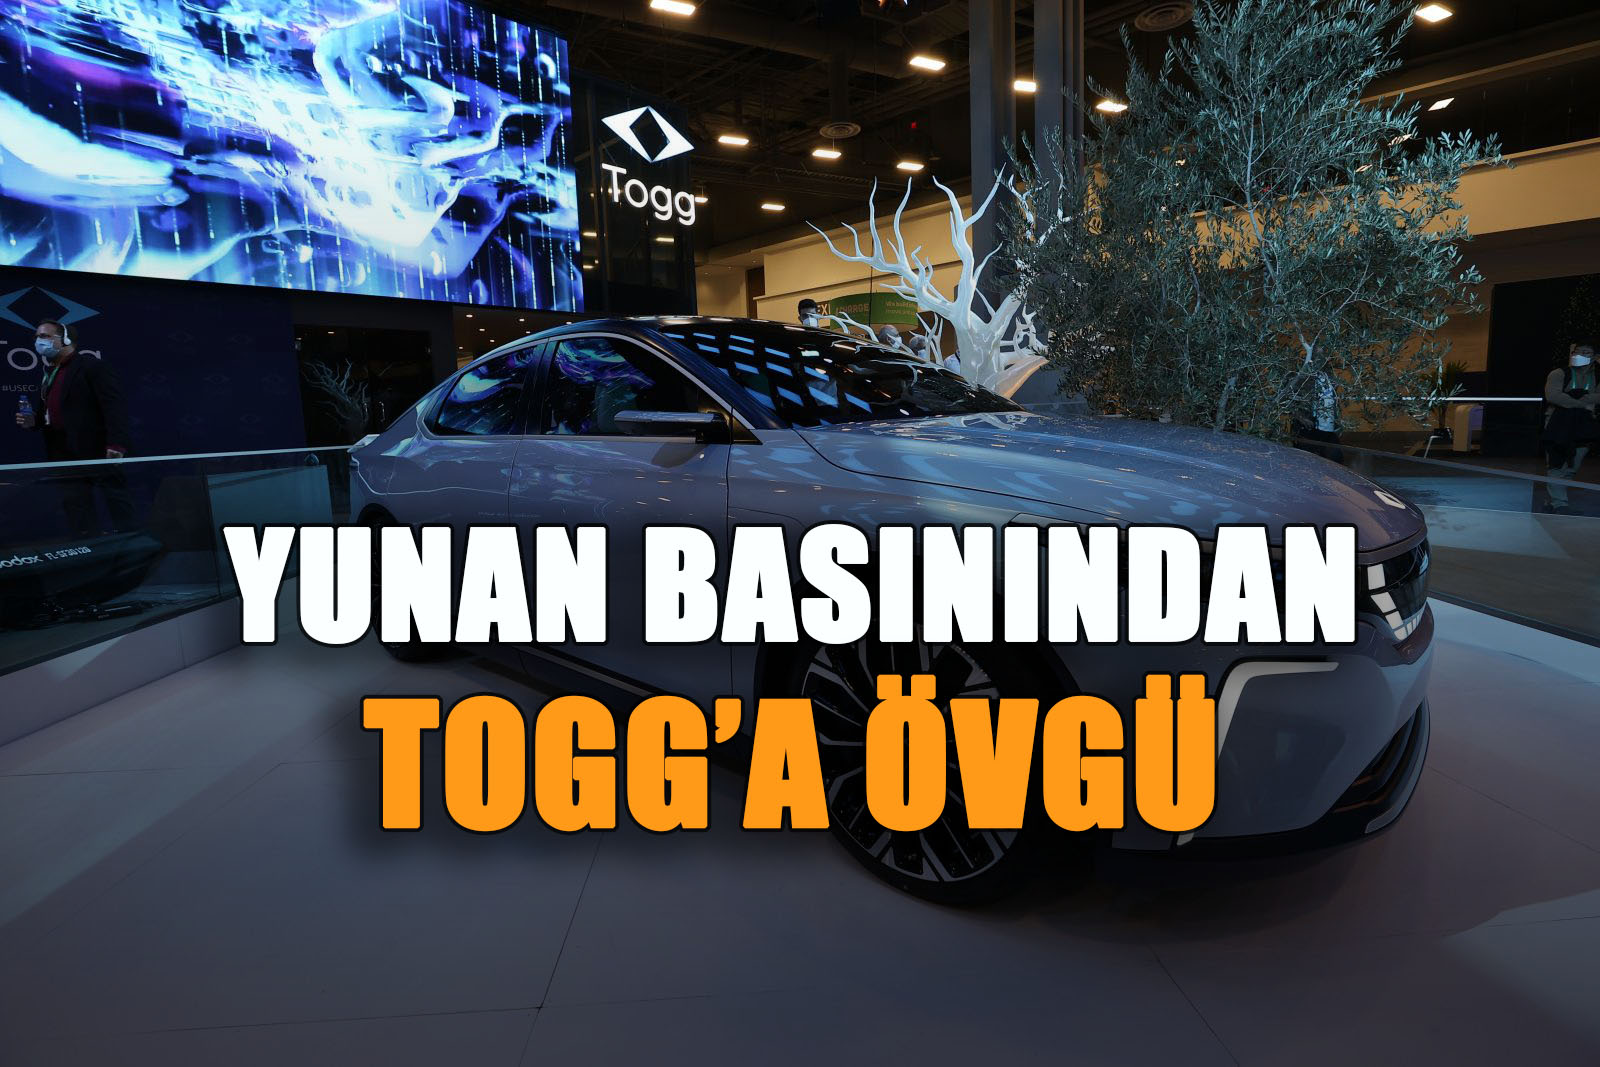 Yunan Basınından Yerli Otomobil Togg'a Övgü